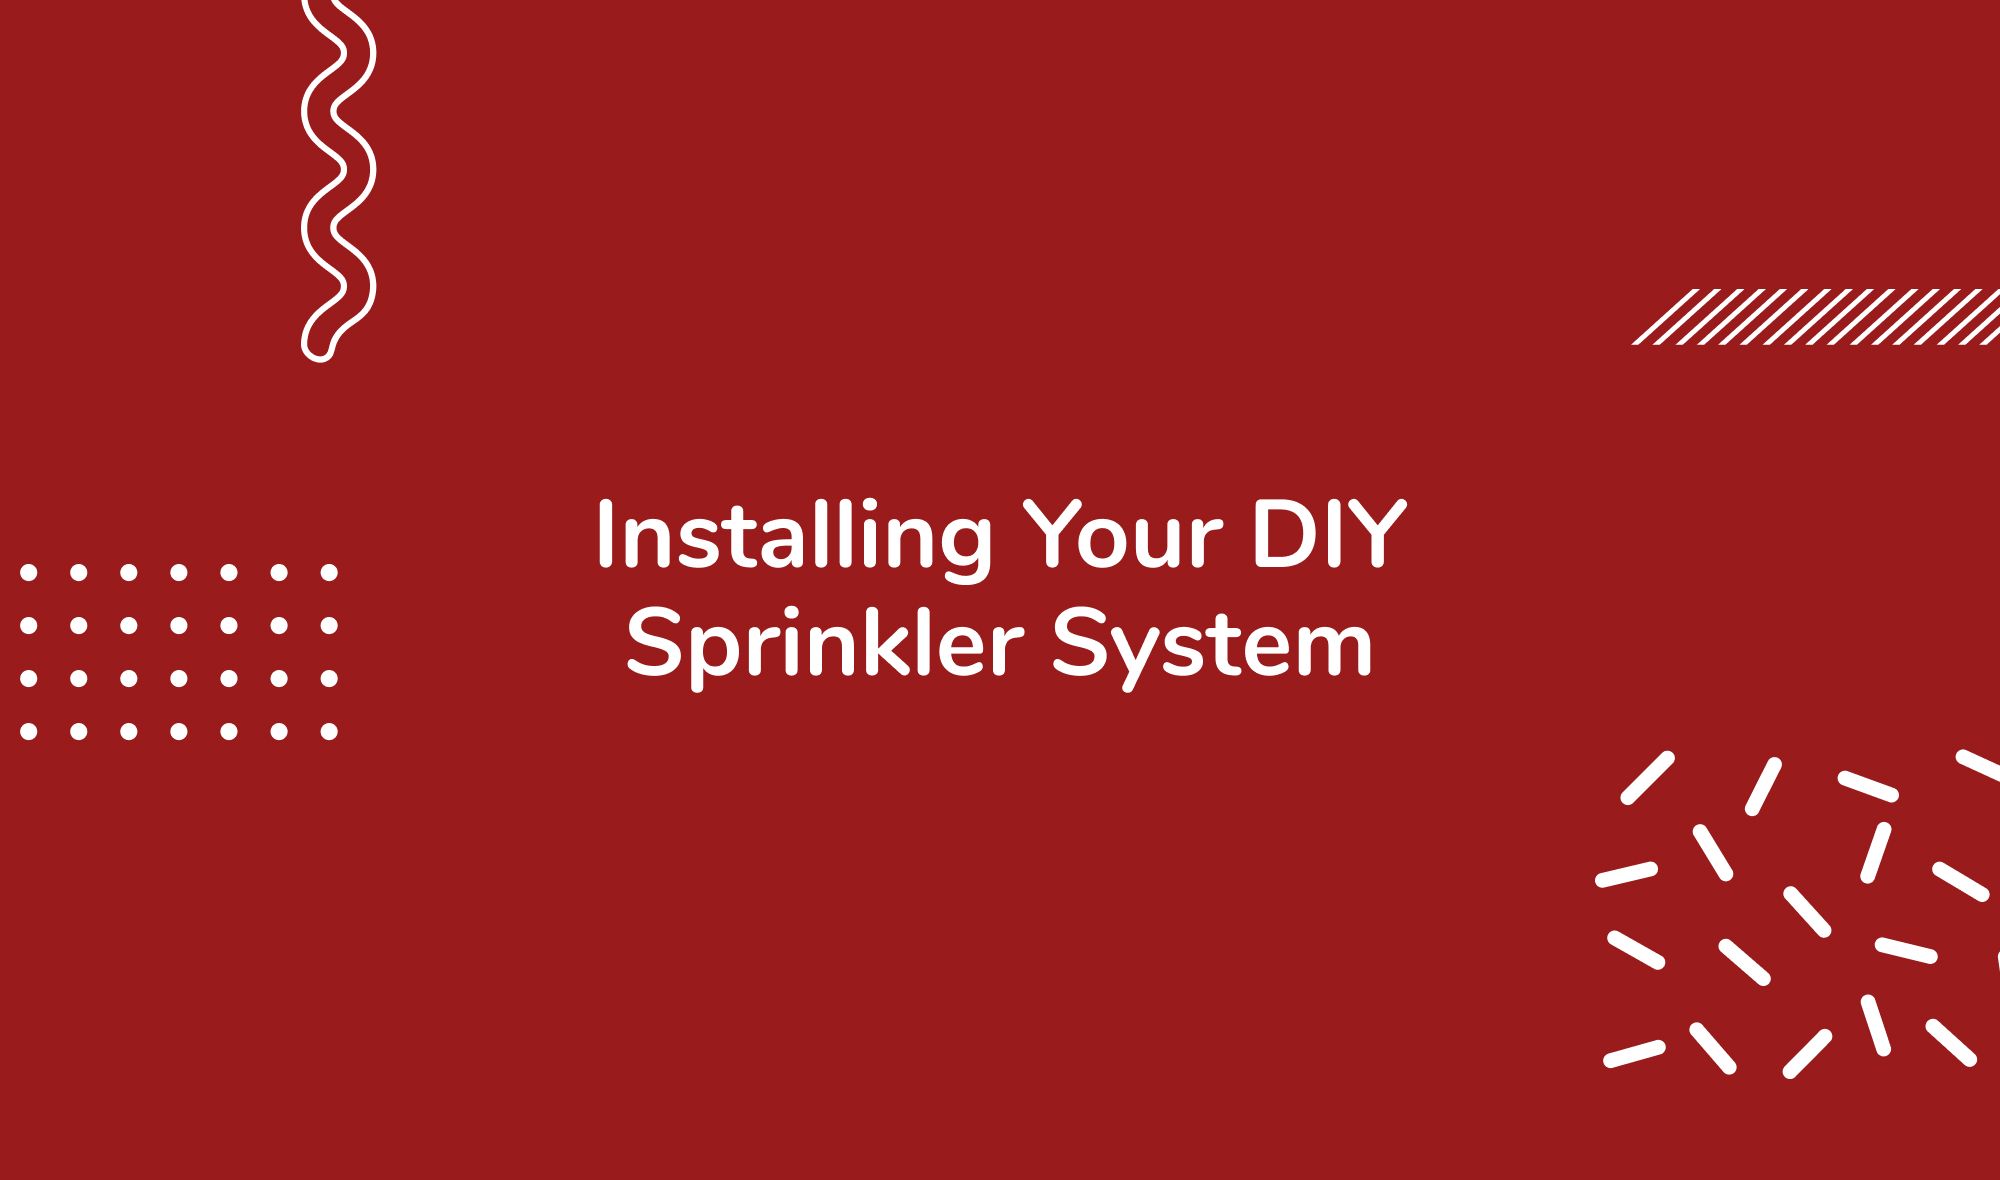 Installing Your DIY Sprinkler System